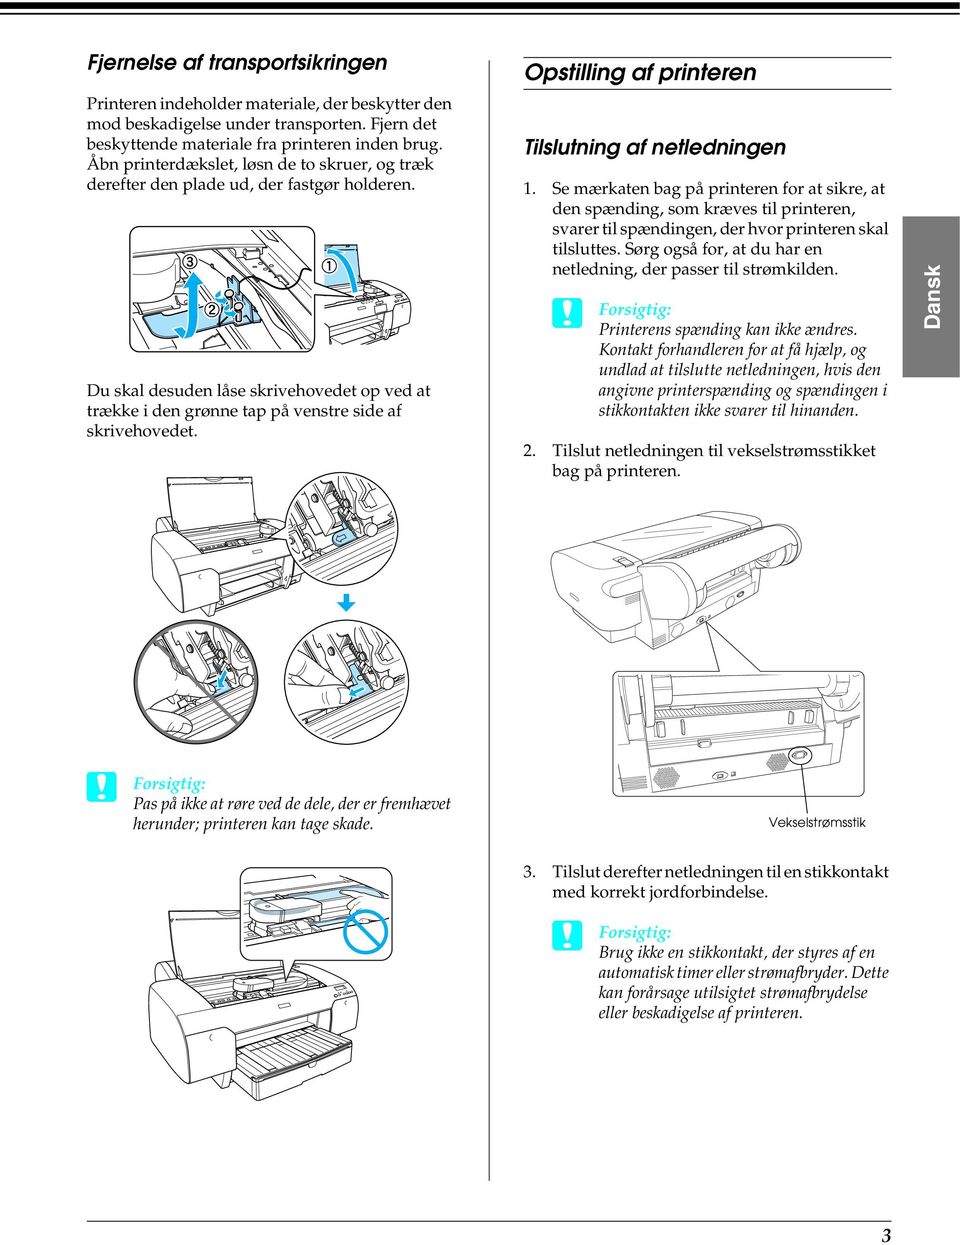 Opstilling af printeren Tilslutning af netledningen 1. Se mærkaten bag på printeren for at sikre, at den spænding, som kræves til printeren, svarer til spændingen, der hvor printeren skal tilsluttes.